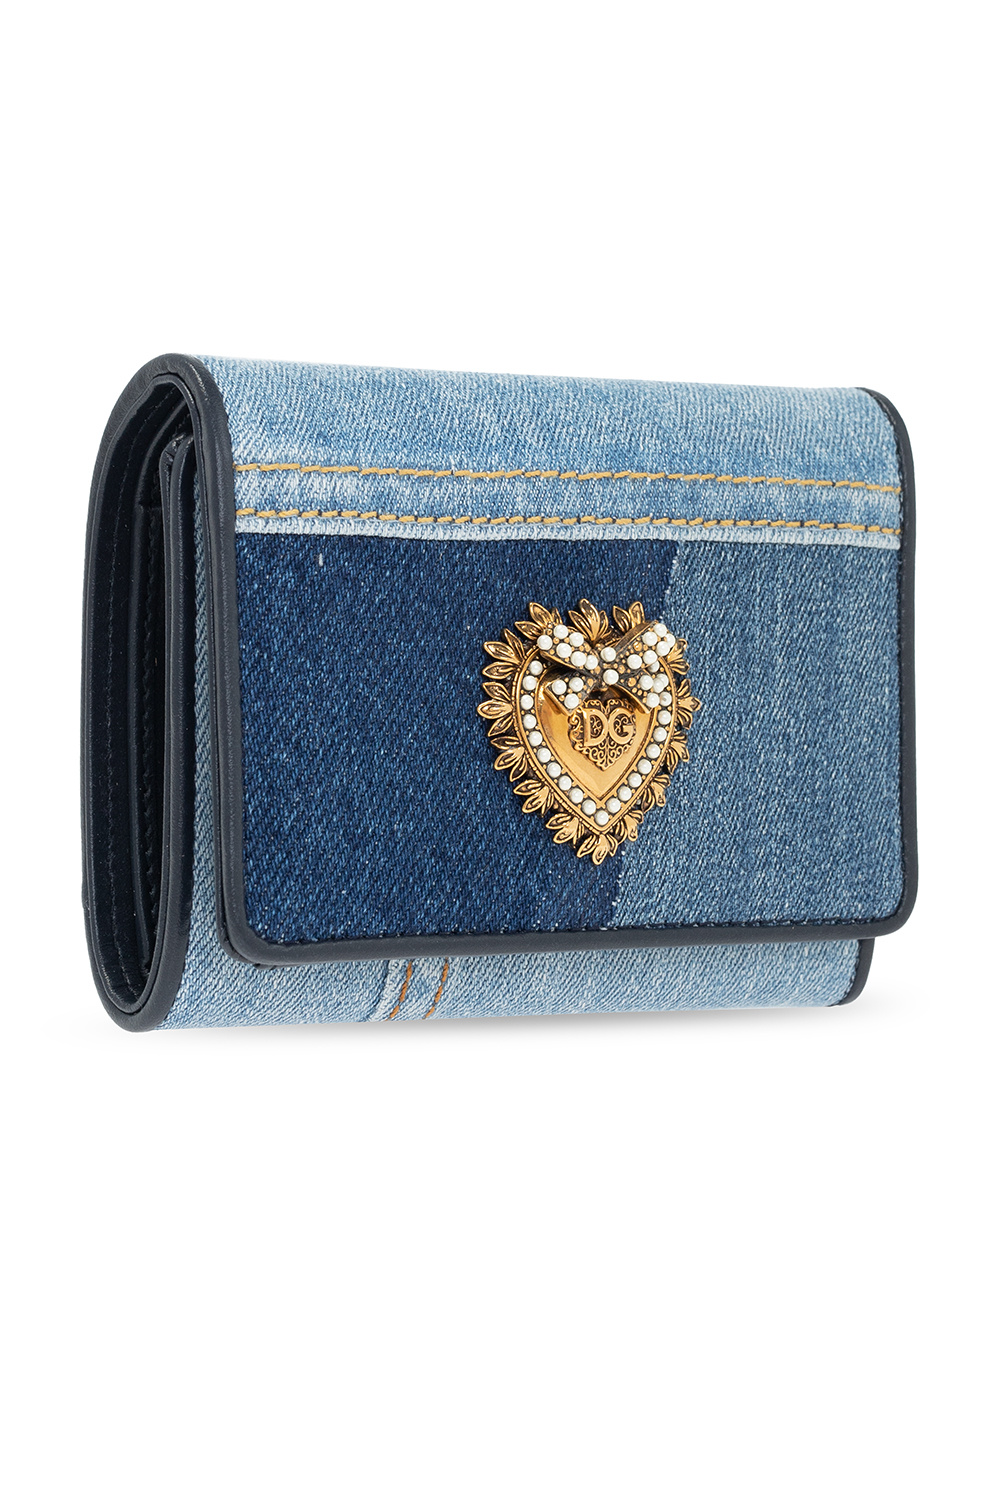 Dolce & Gabbana KNITWEAR wallet